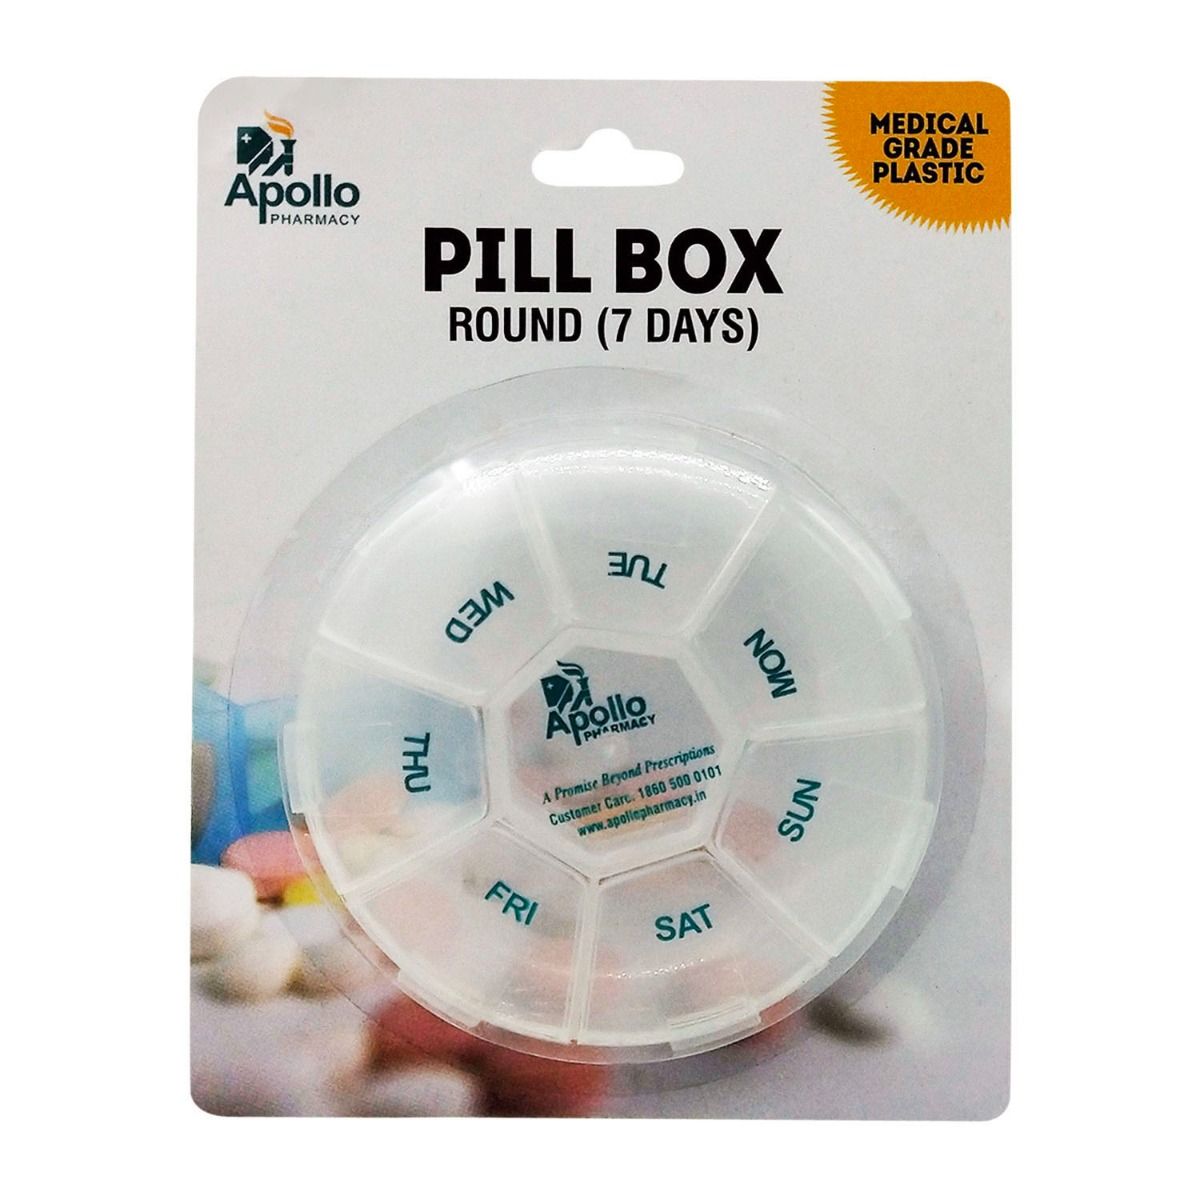 Buy Apollo Pharmacy Pill Box Round 7 Days, 1 Kit Online